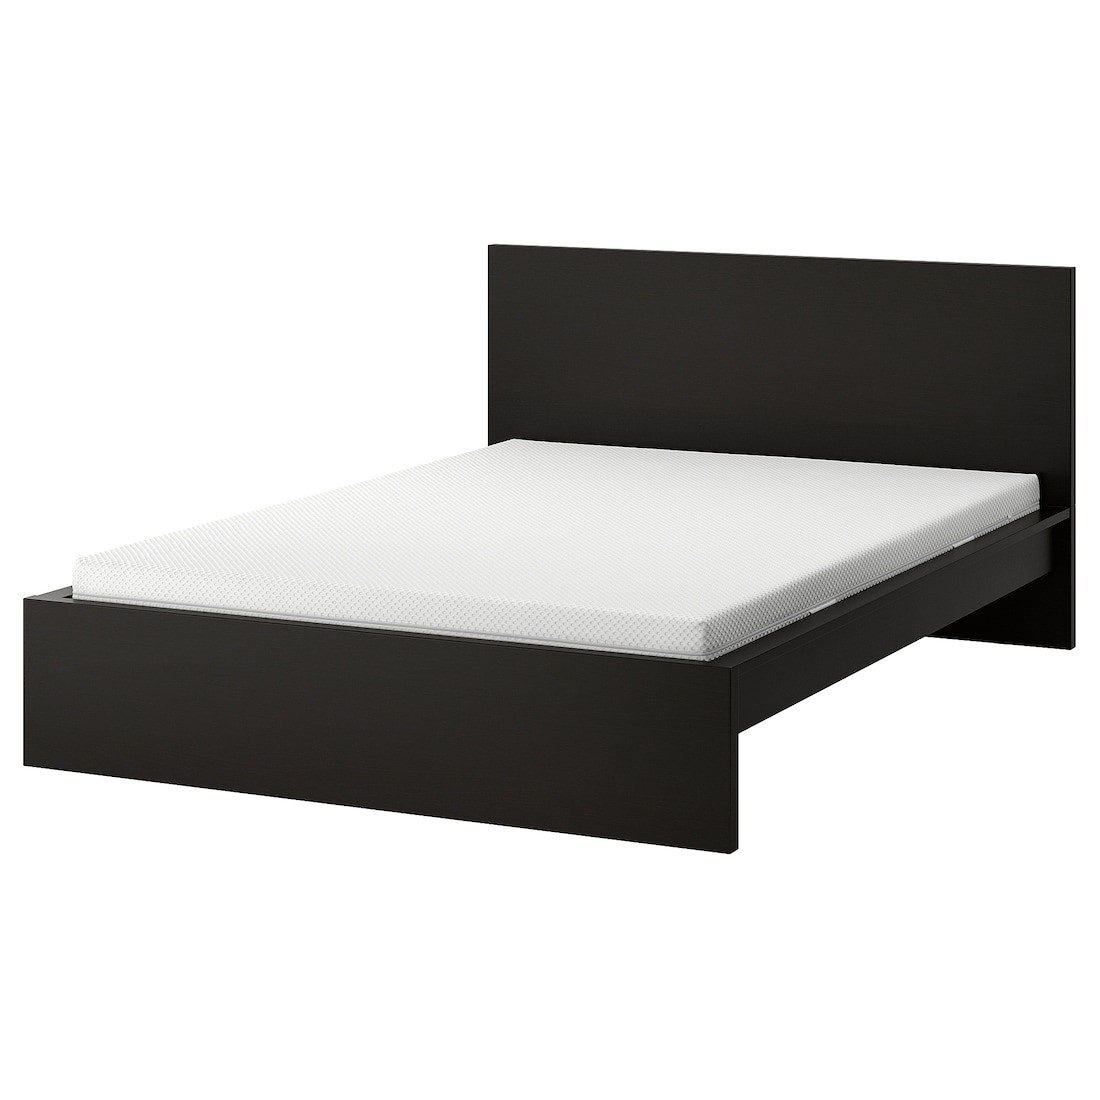 MALM Ліжко з матрацом, чорно-коричневий/ Åbygda середньої твердості, 160x200 см